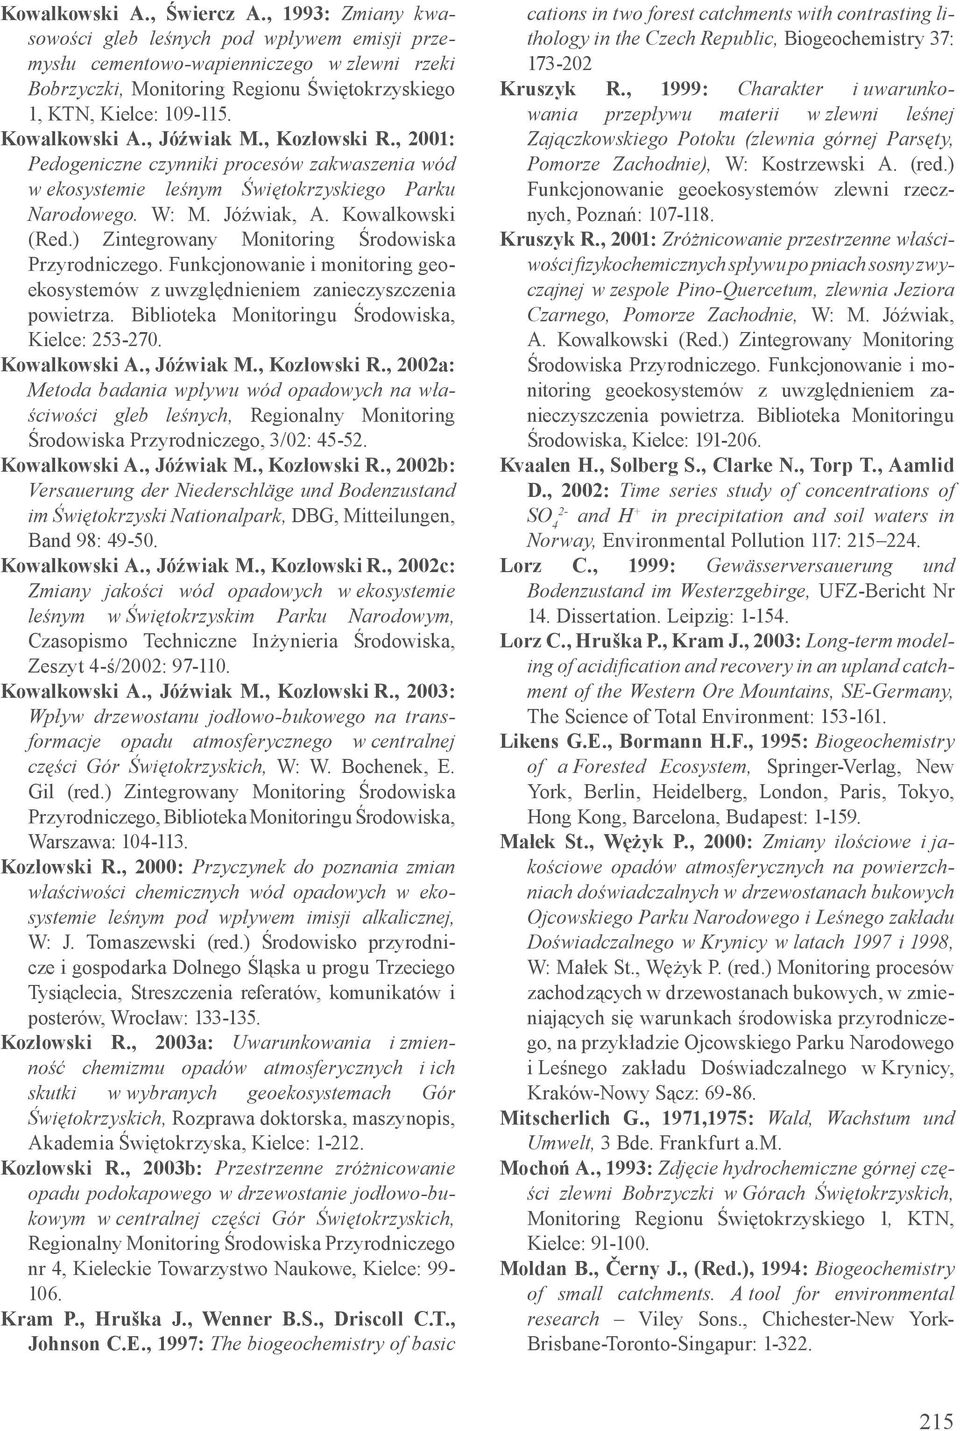 , Jóźwiak M., Kozłowski R., 2001: Pedogeniczne czynniki procesów zakwaszenia wód w ekosystemie leśnym Świętokrzyskiego Parku Narodowego. W: M. Jóźwiak, A. Kowalkowski (Red.